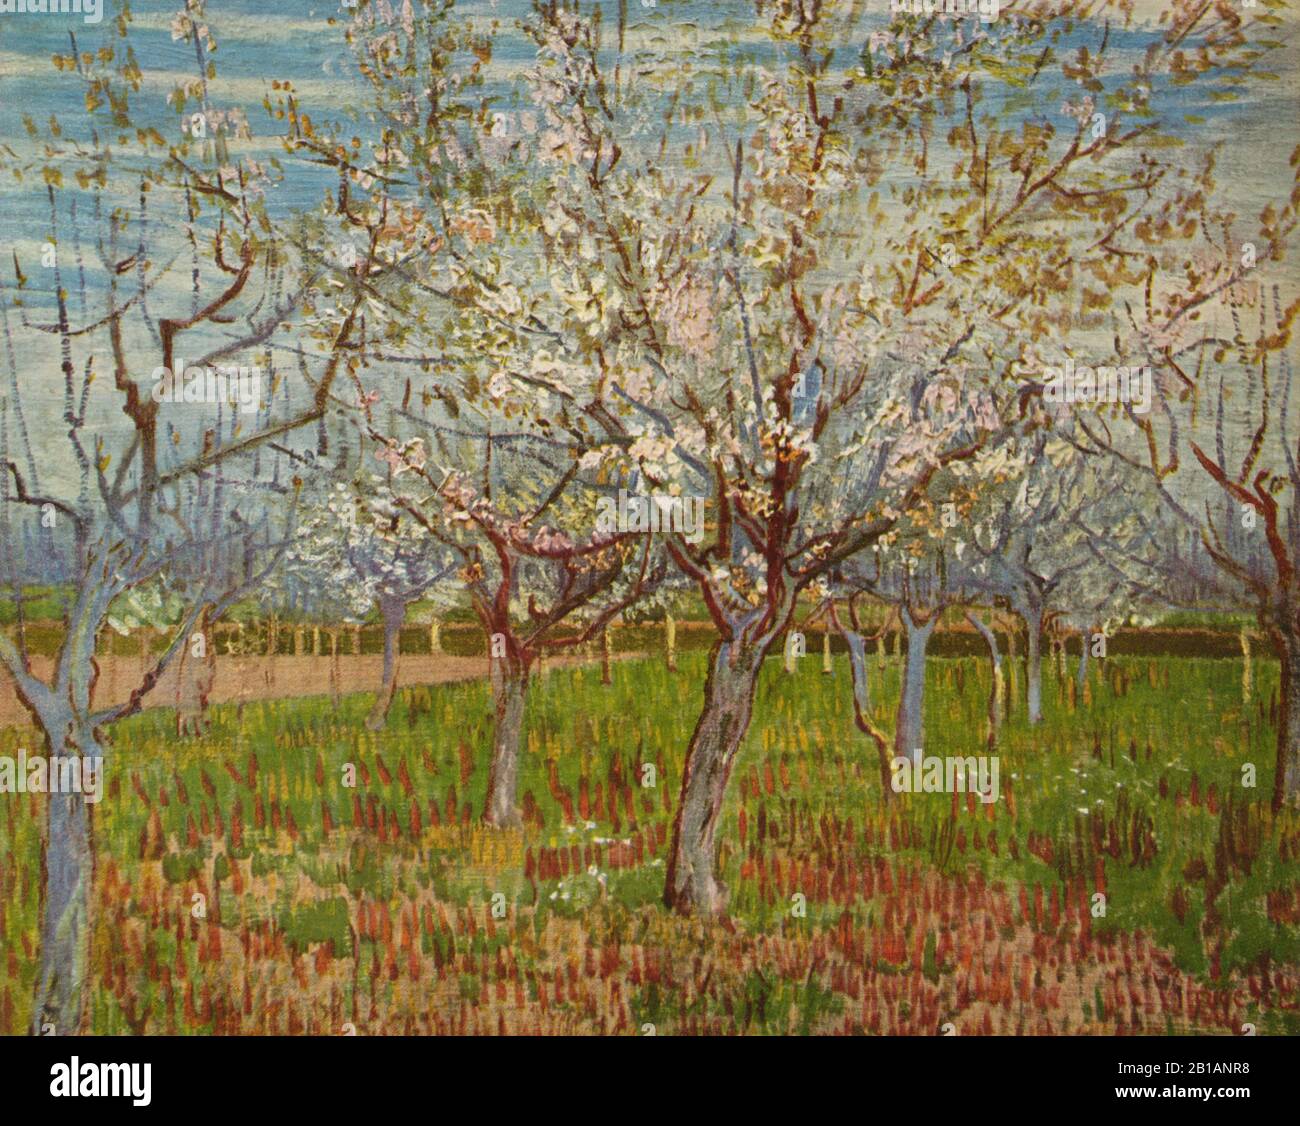 The Orchard, 1888-8 - Gemälde von Vincent van Gogh - Sehr hohe Auflösung und hochwertige Bilder Stockfoto